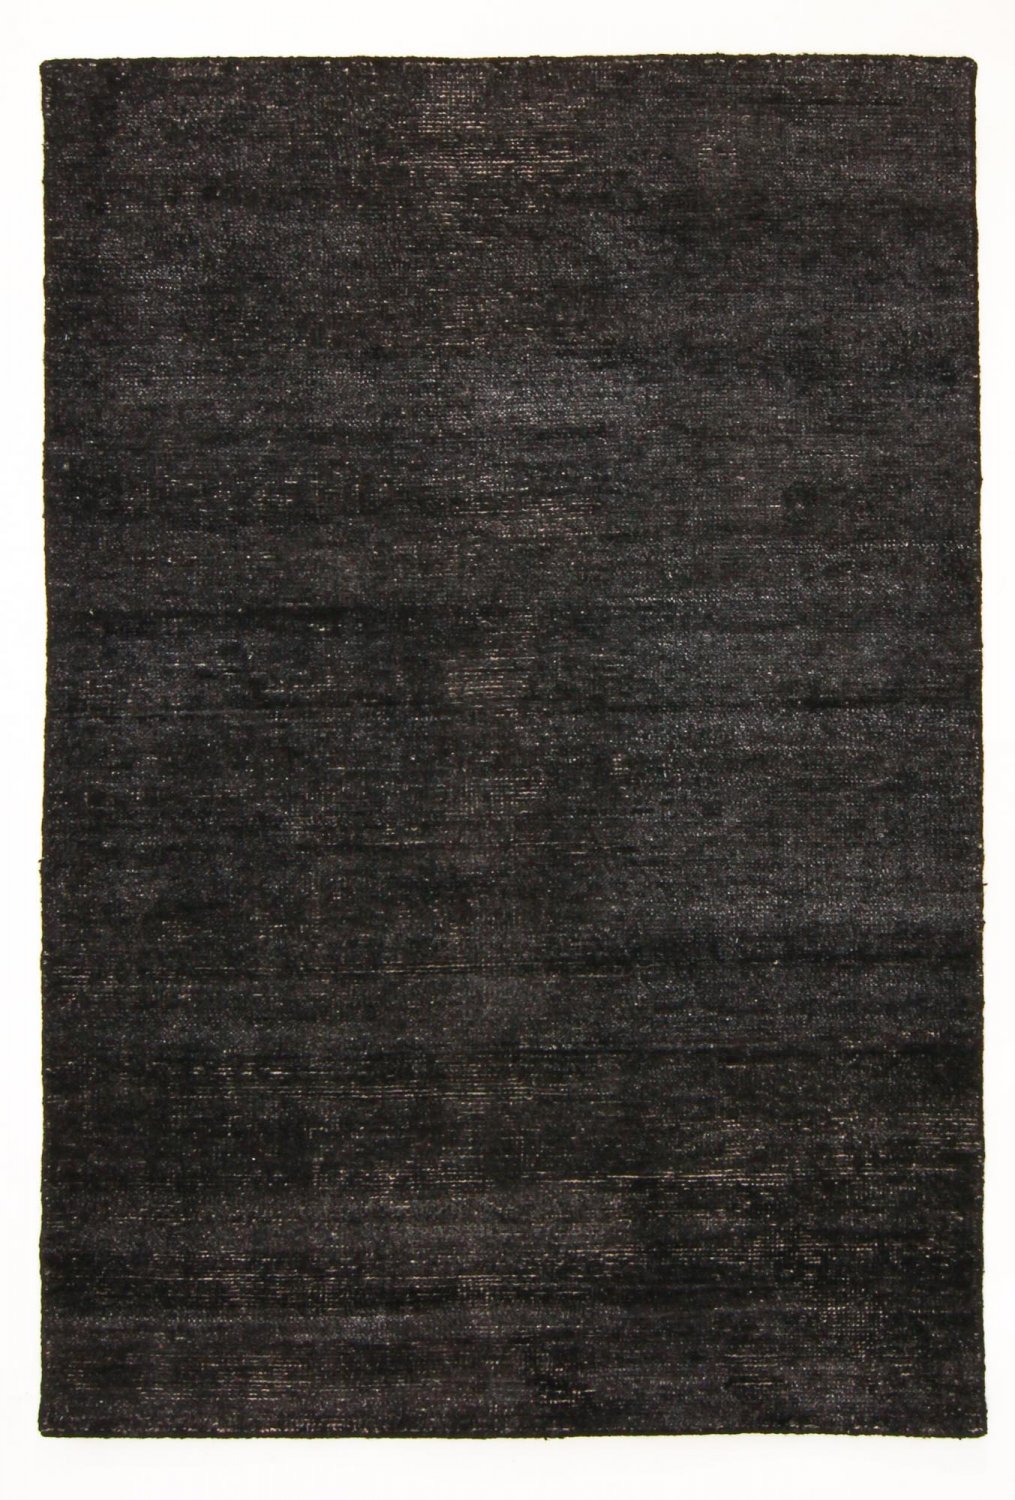 Bamboo silk Teppich - Faliraki (schwarz)